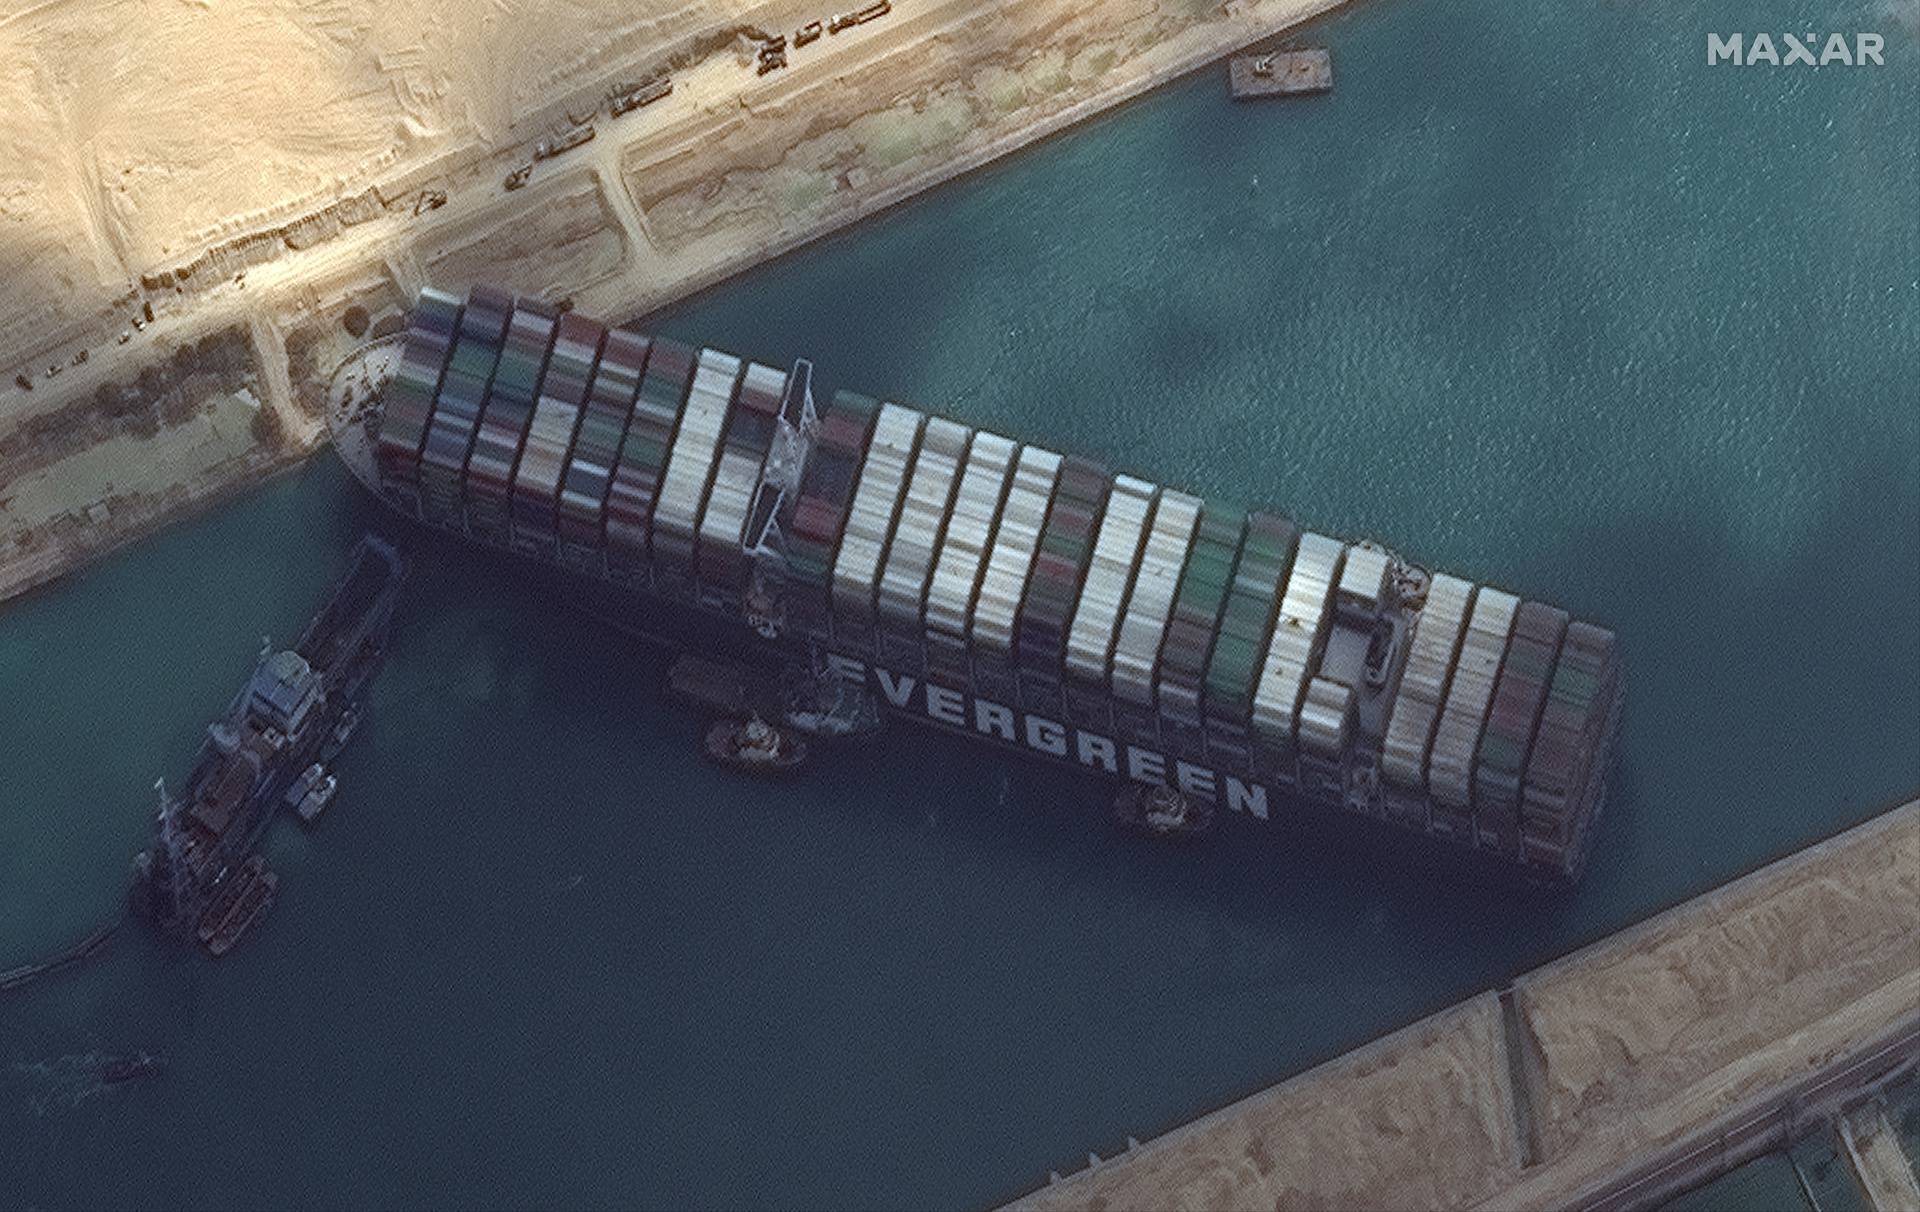 Spas za blokirani Suez stiže za vikend? Čeka se plima koja bi mogla podići i izvući  veliki brod